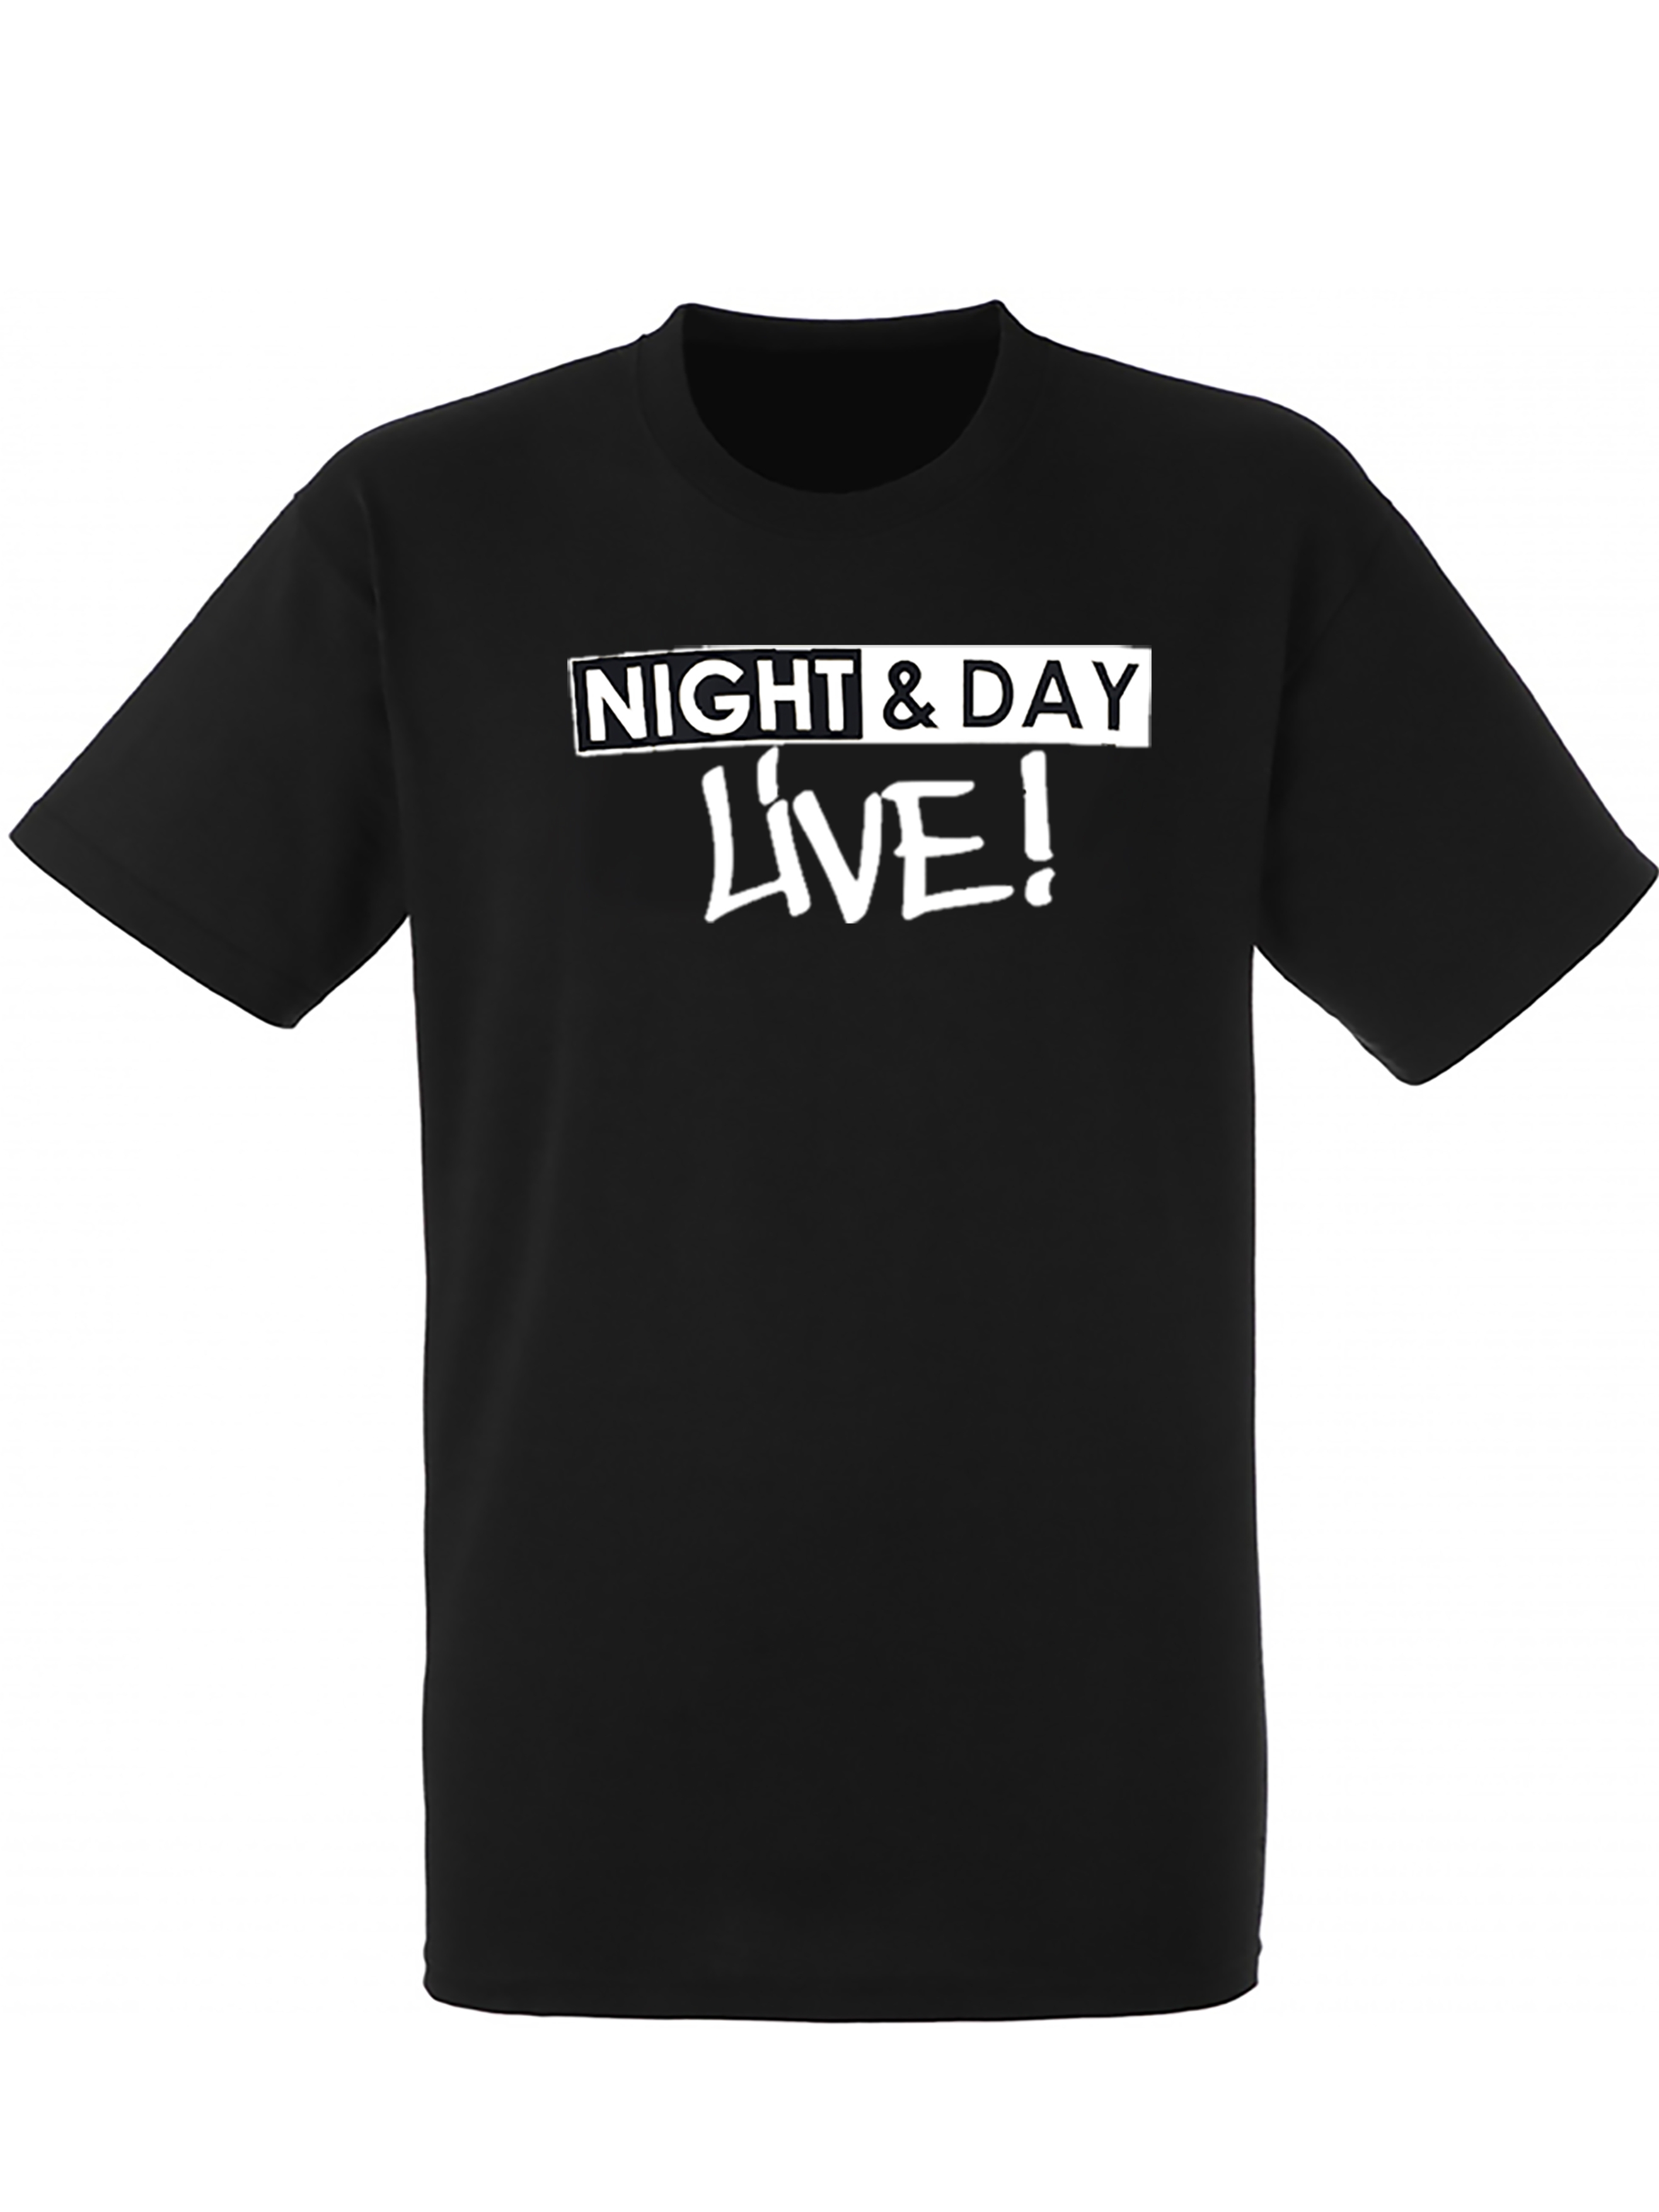 tee-shirt "night & day live" noir logo blanc de night & day sur Scredboutique.com